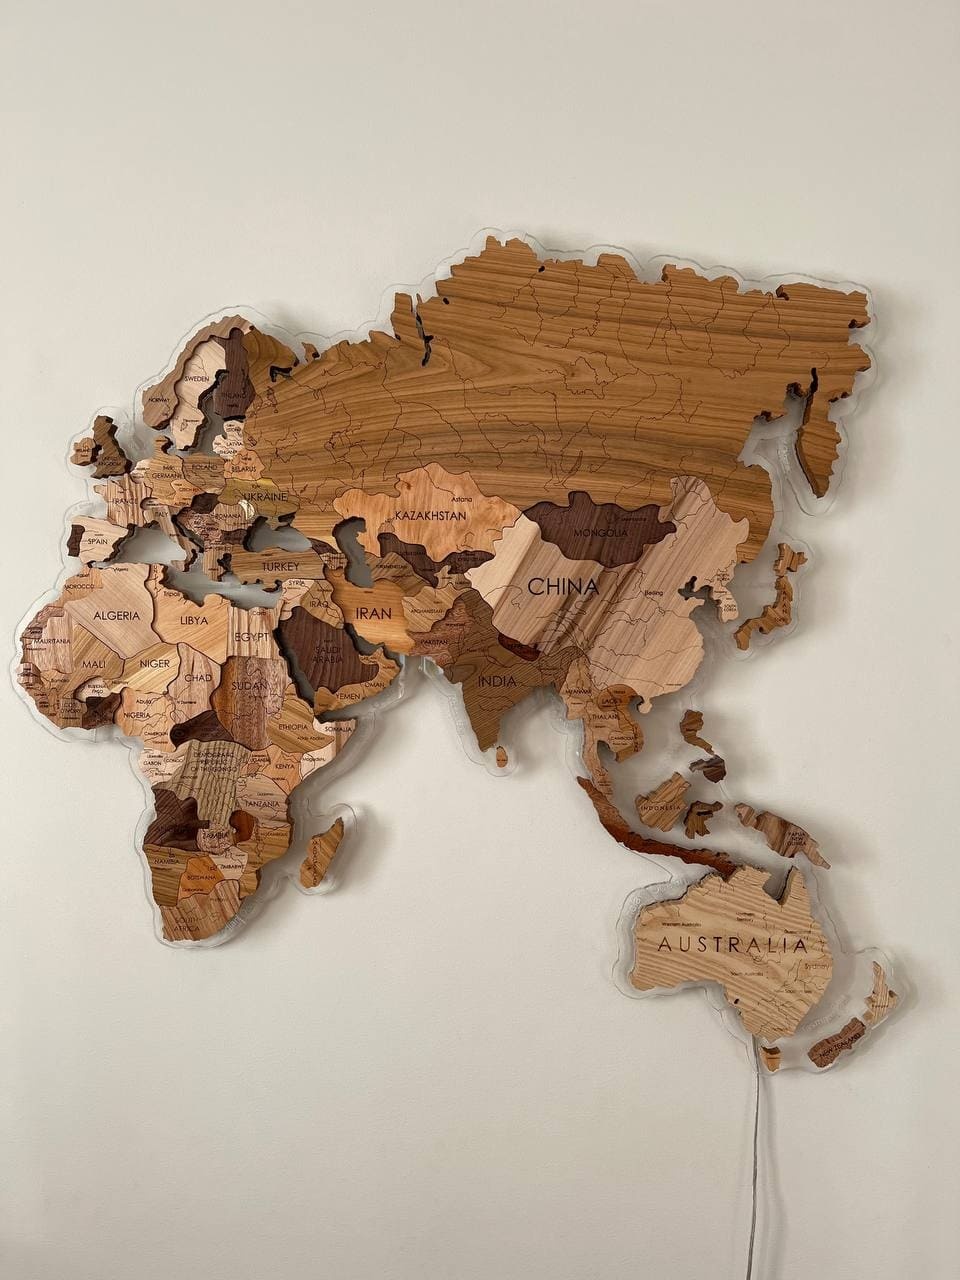 Дерев'яна Карта Світу "S" 180x105 см з масиву дерева (5 порід дерева) 16191908599263 фото